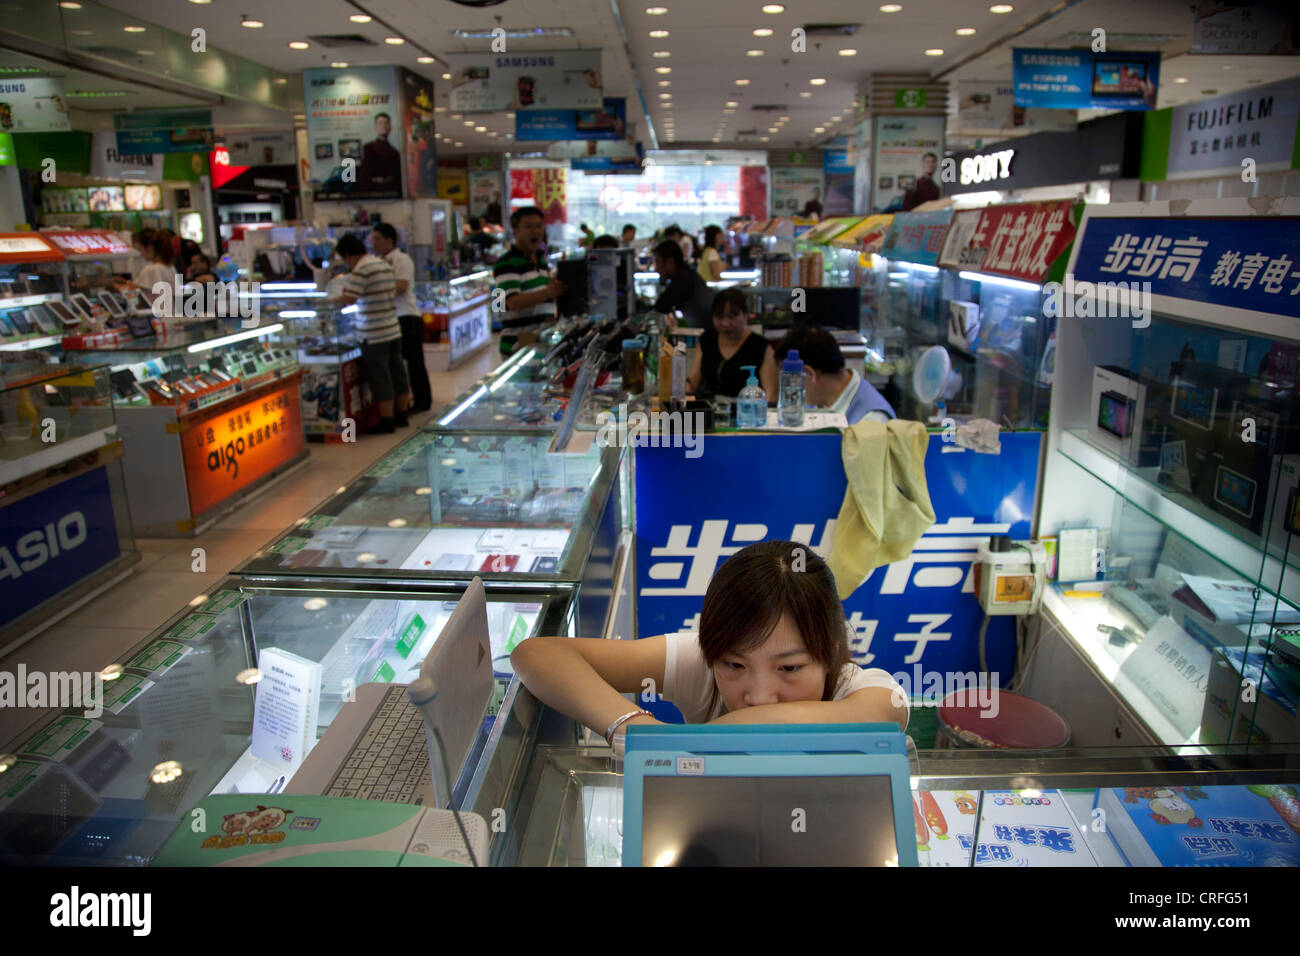 Computer-Verkäufer in digitalen Quadrat e-Plaza Einkaufszentrum. Zhongguancun oder Zhong Guan Cun, Technologiezentrum, Beijing, China. Stockfoto